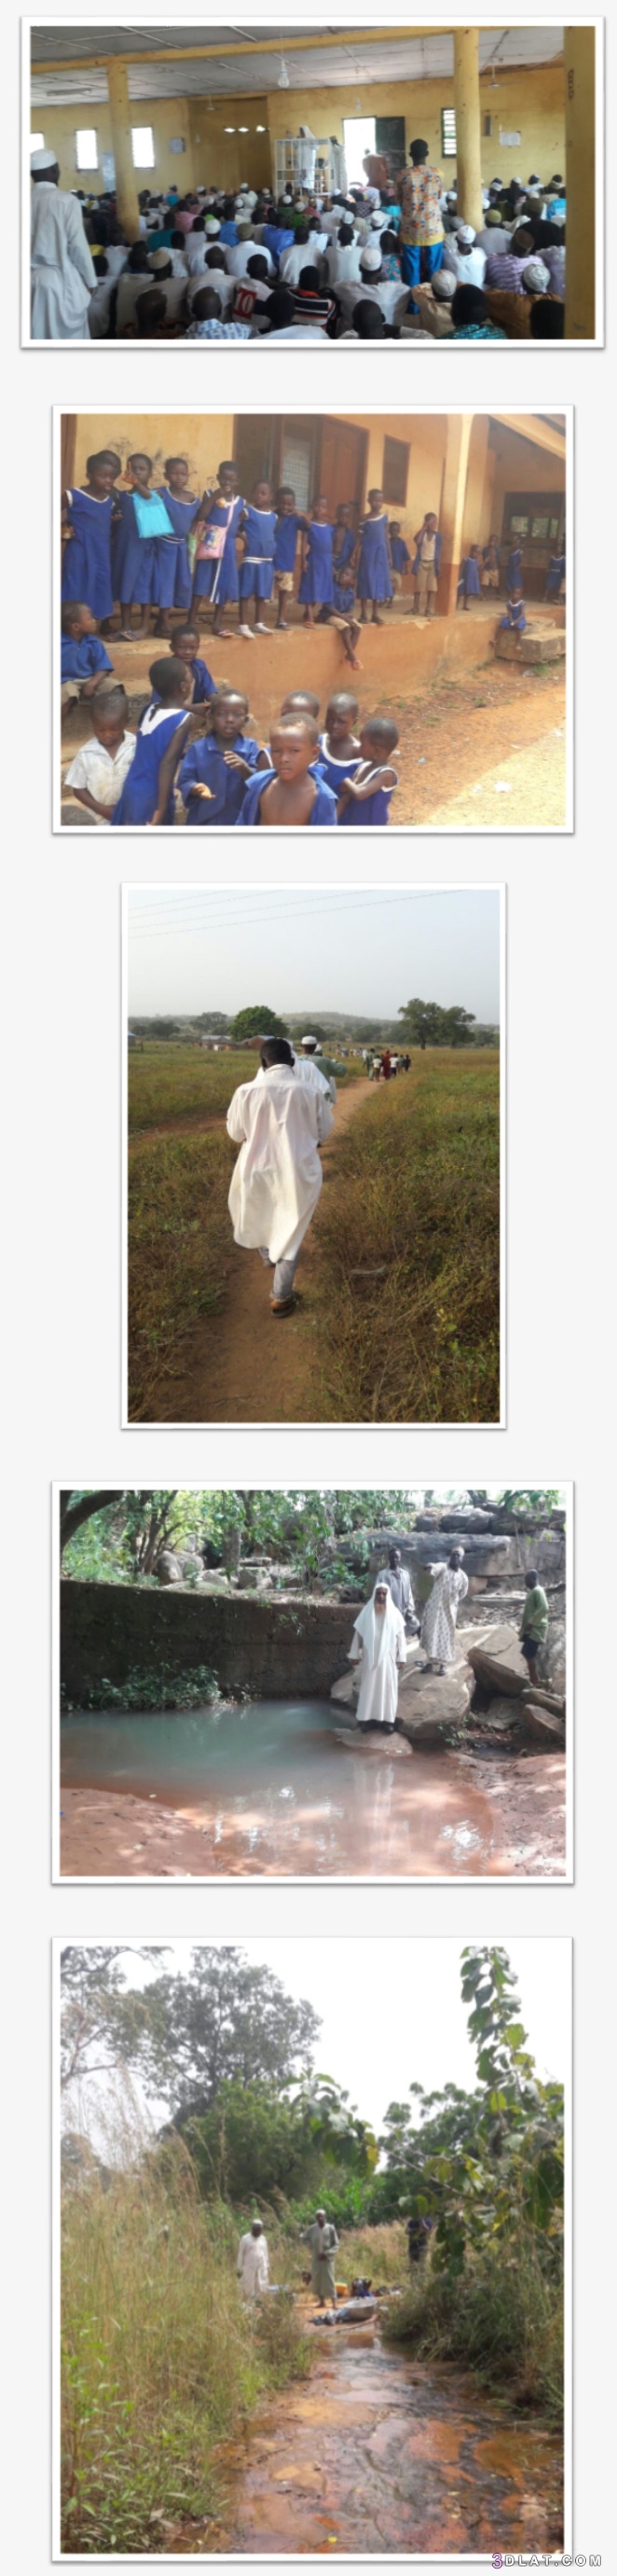 إسلام 140 وتفطير مسلمي قريتين شمال غانا، دروس شرعية وتعليمية للمسلمين الجدد